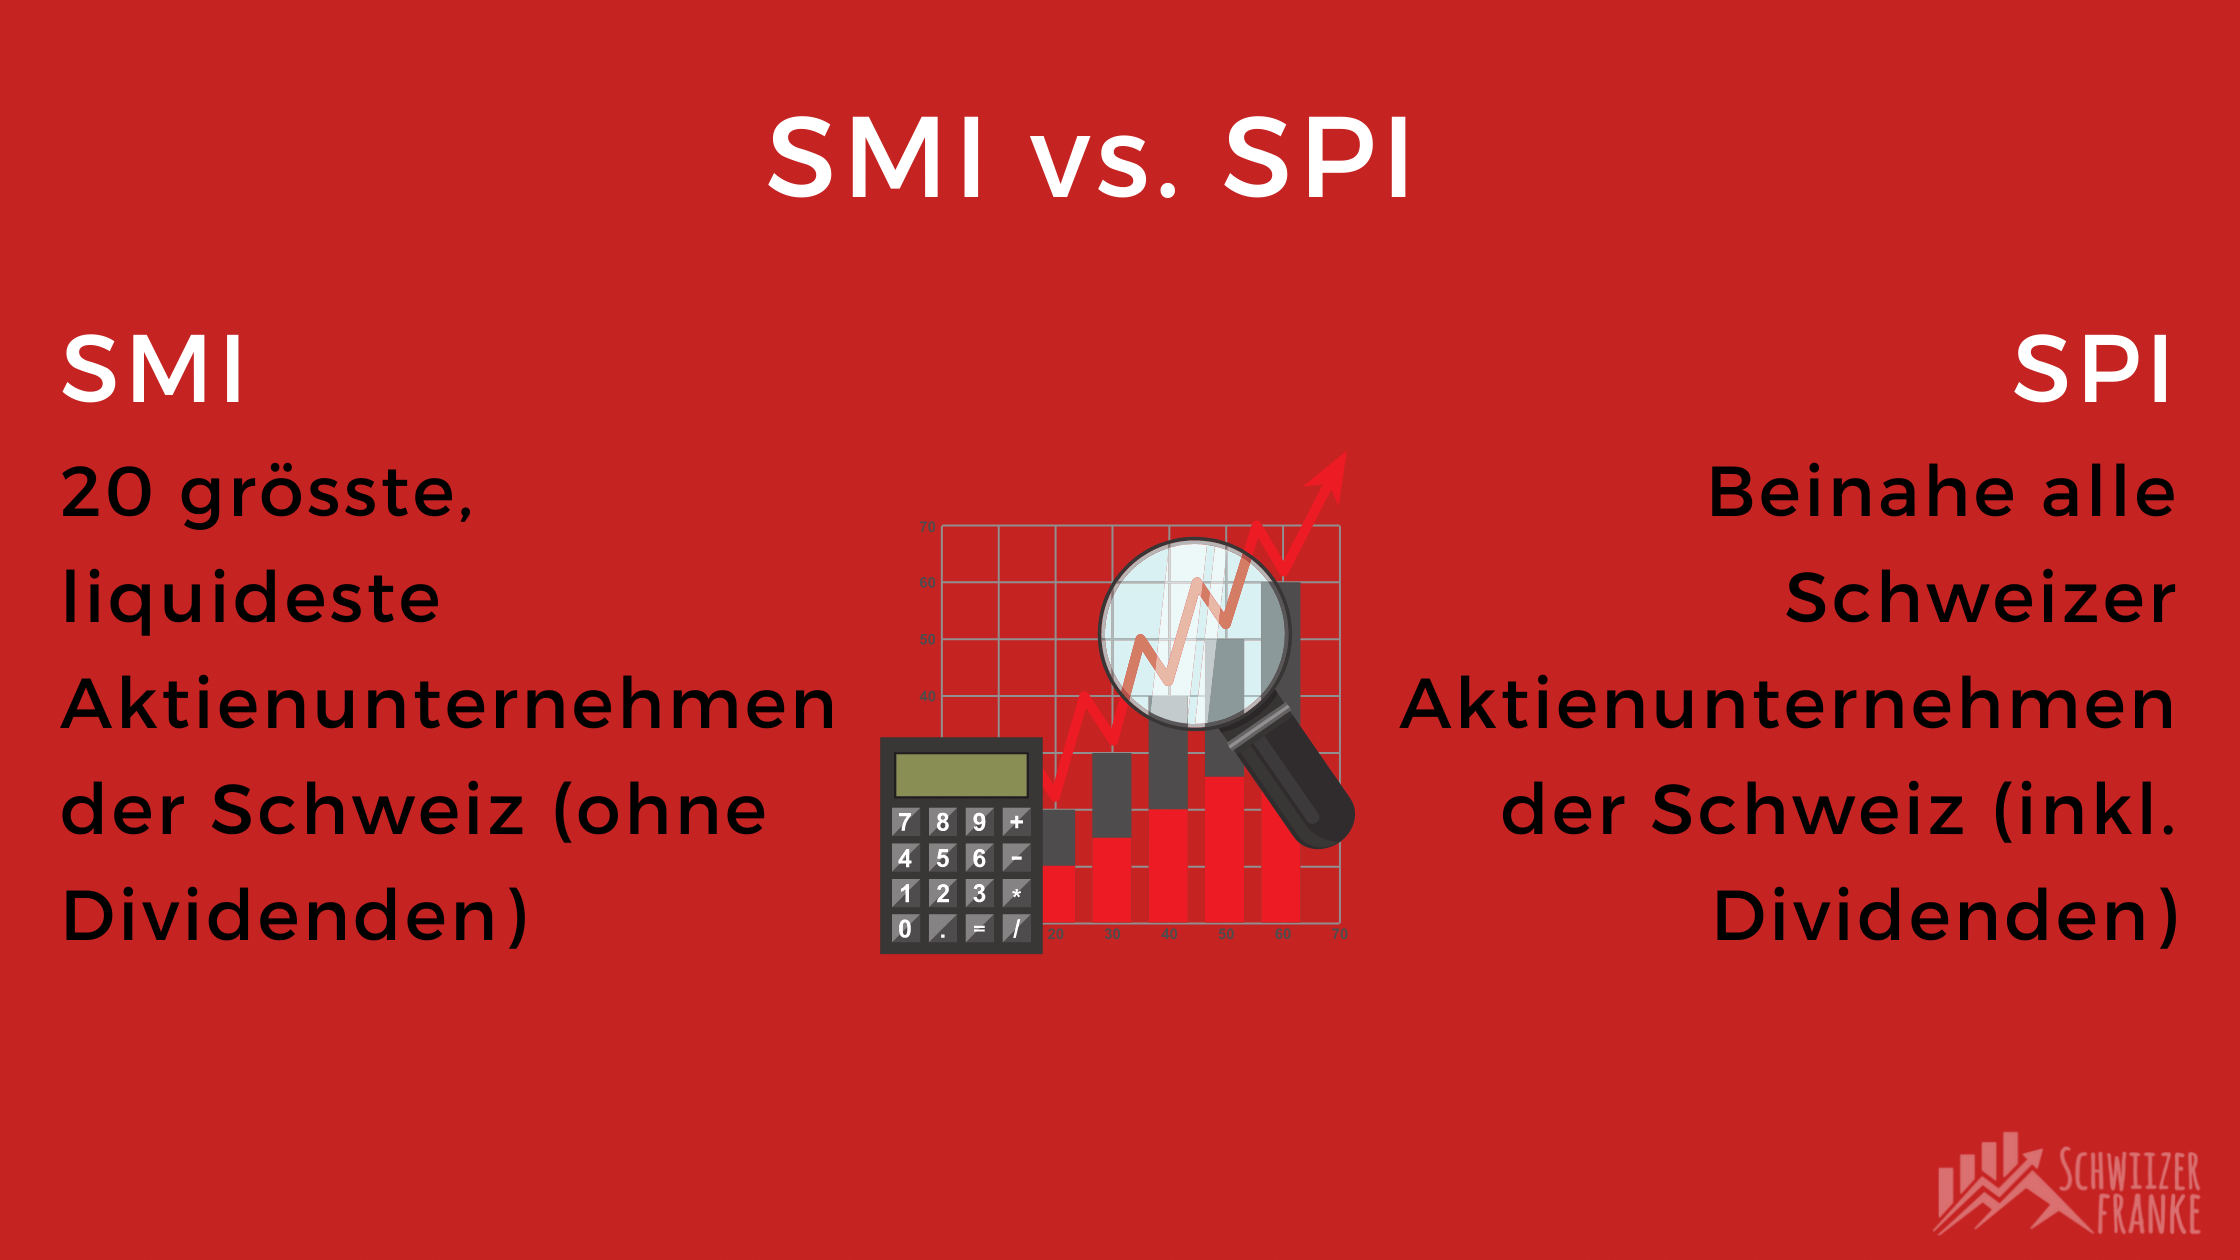 Vergleich ETF SMI Swiss Market Index Swiss performance index SMI vs. SPI unterschiede ETF vergleich SMI ETF iShares UBS Luxor Dividende